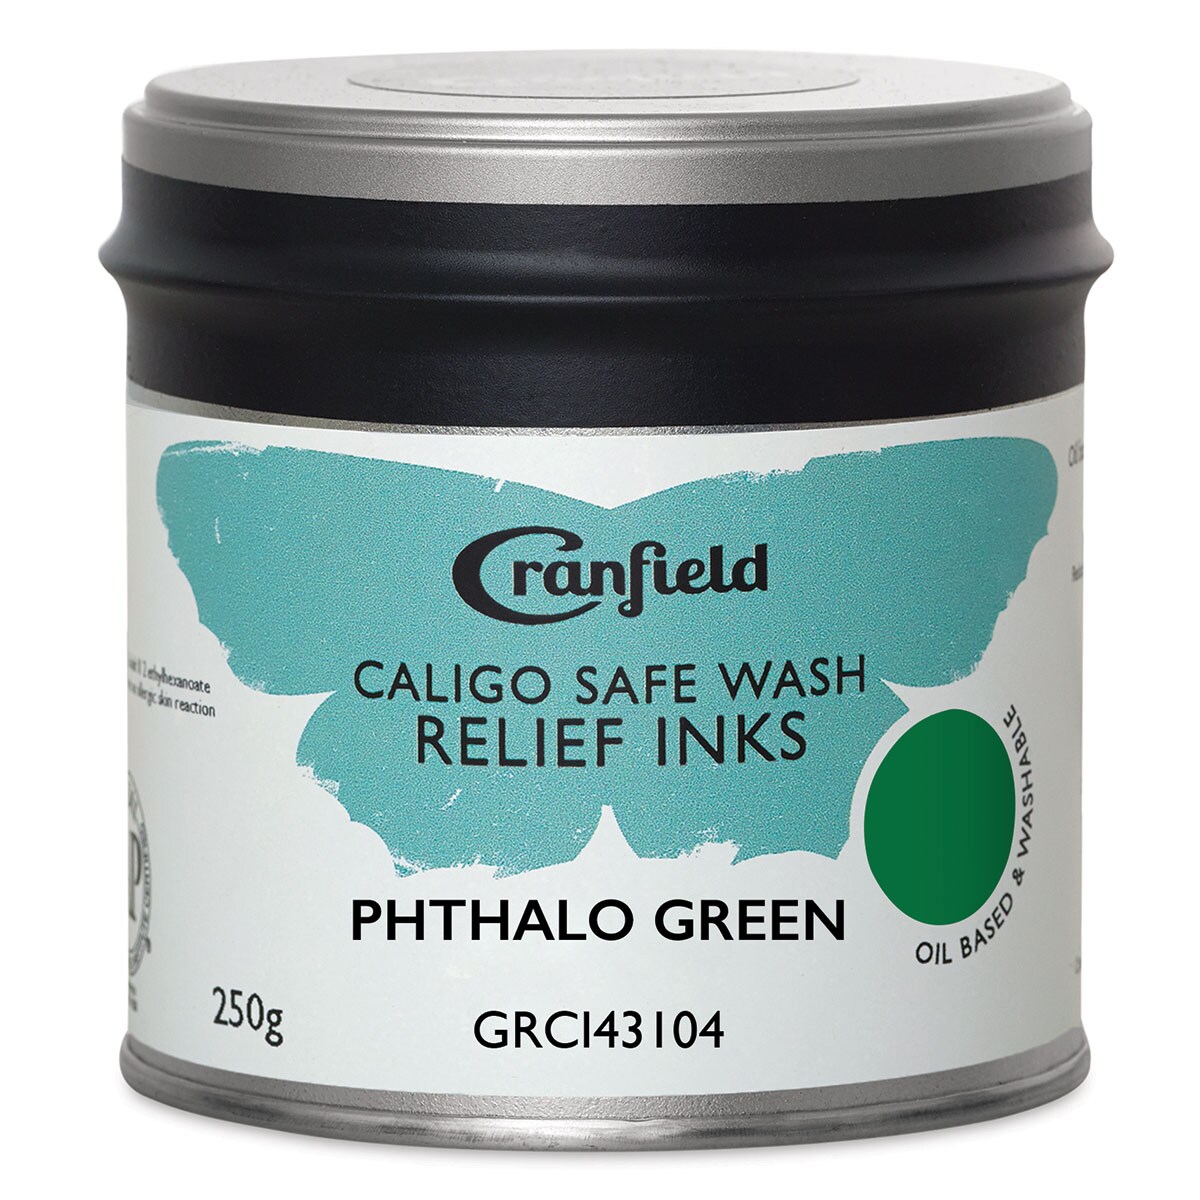 Cranfield Caligo Safe Wash Relief Ink - Phthalo Green, 250 g